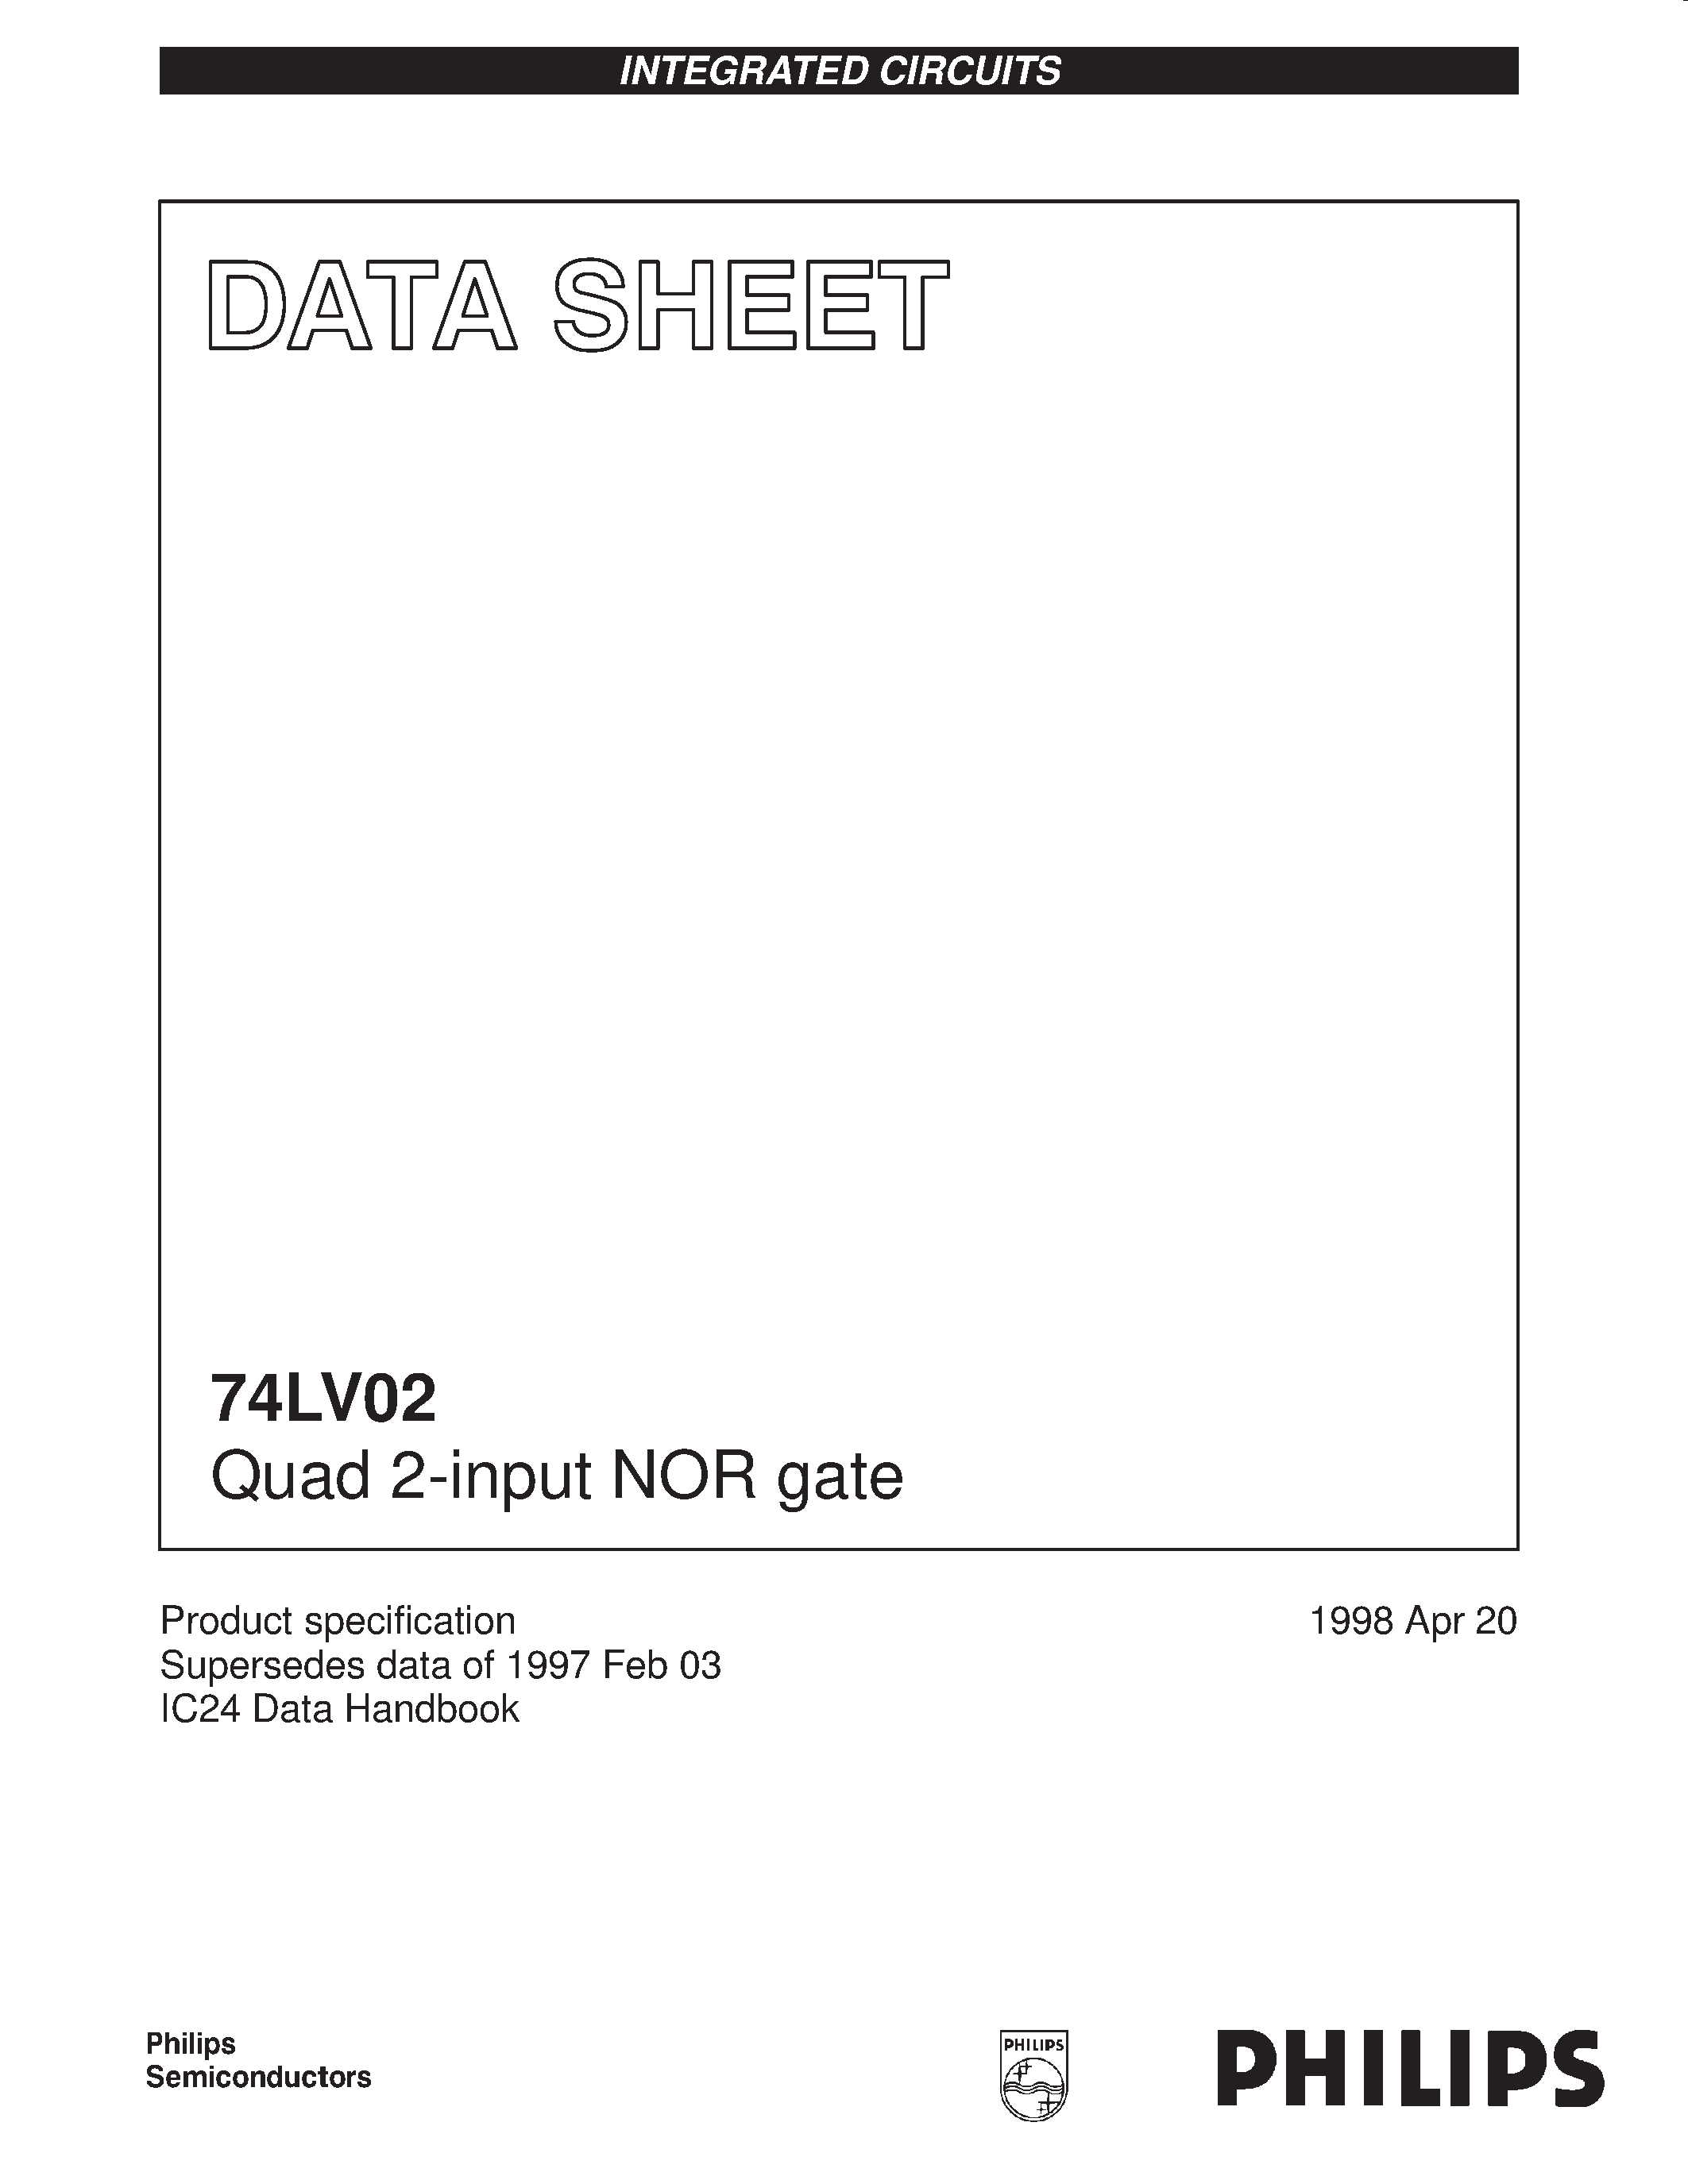 Даташит 74LV02 - Quad 2-input NOR gate страница 1